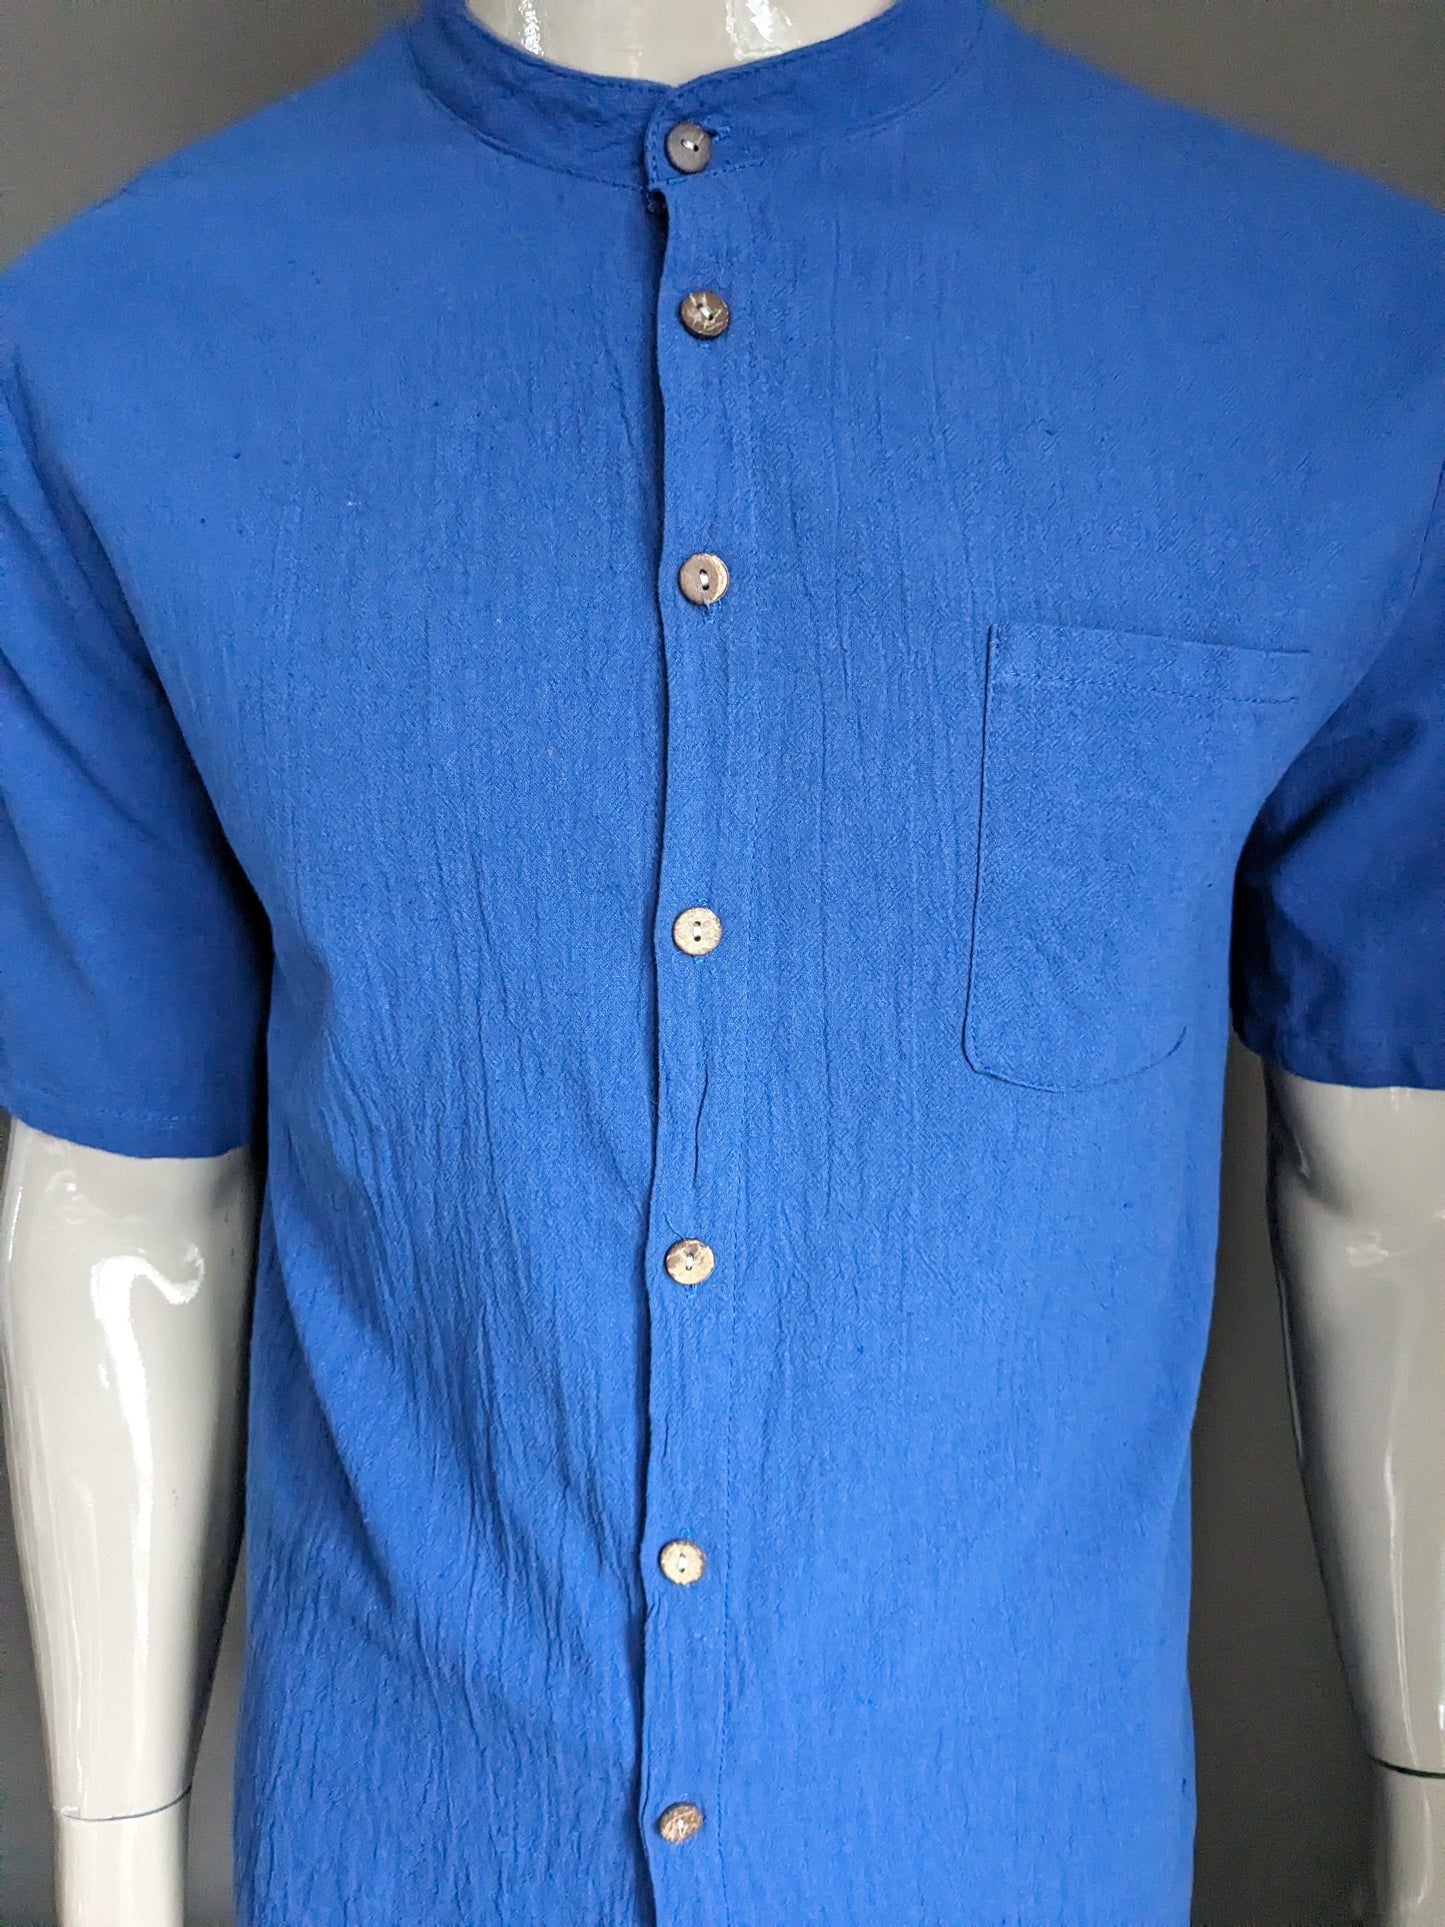 Chemise vintage à manches courtes avec mao / col surélevé. Bleu. Taille M.